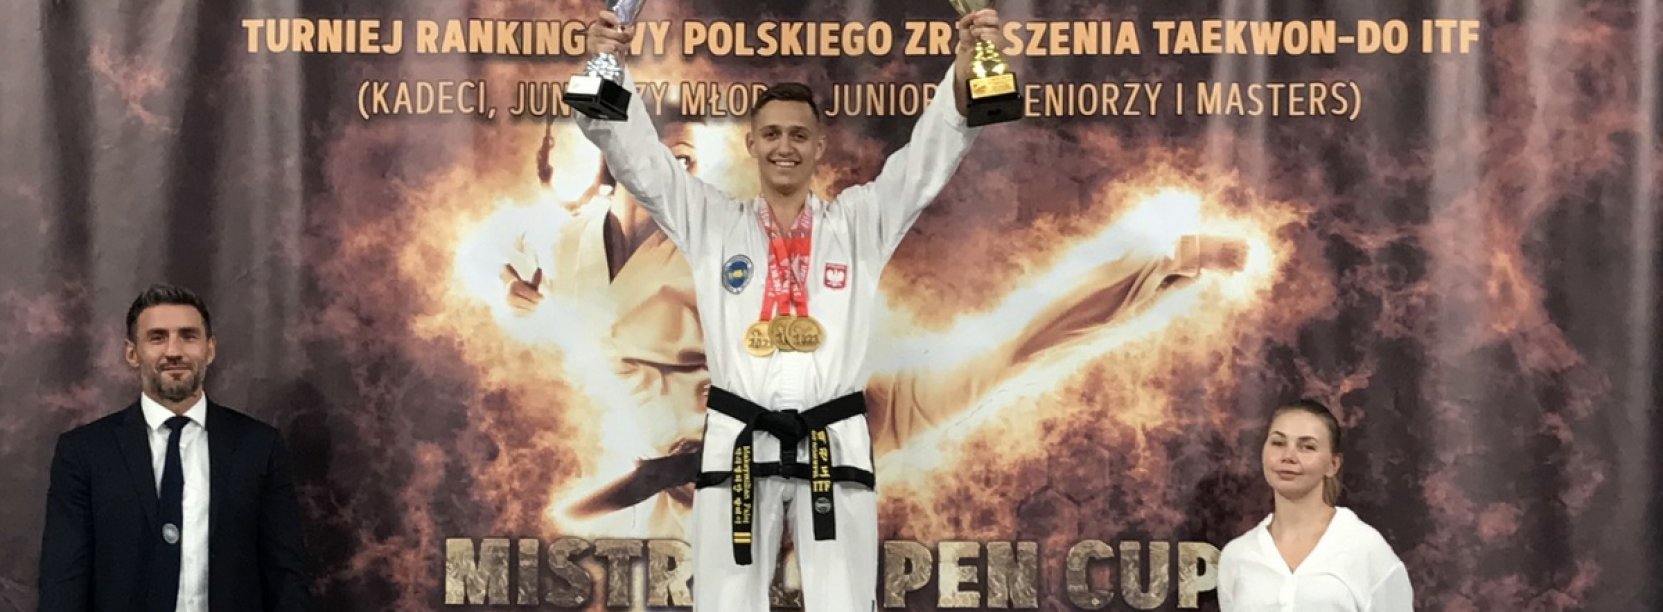 Maksymilian Palej zdobył trzy tytułu Mistrza Polski na jednych zawodach